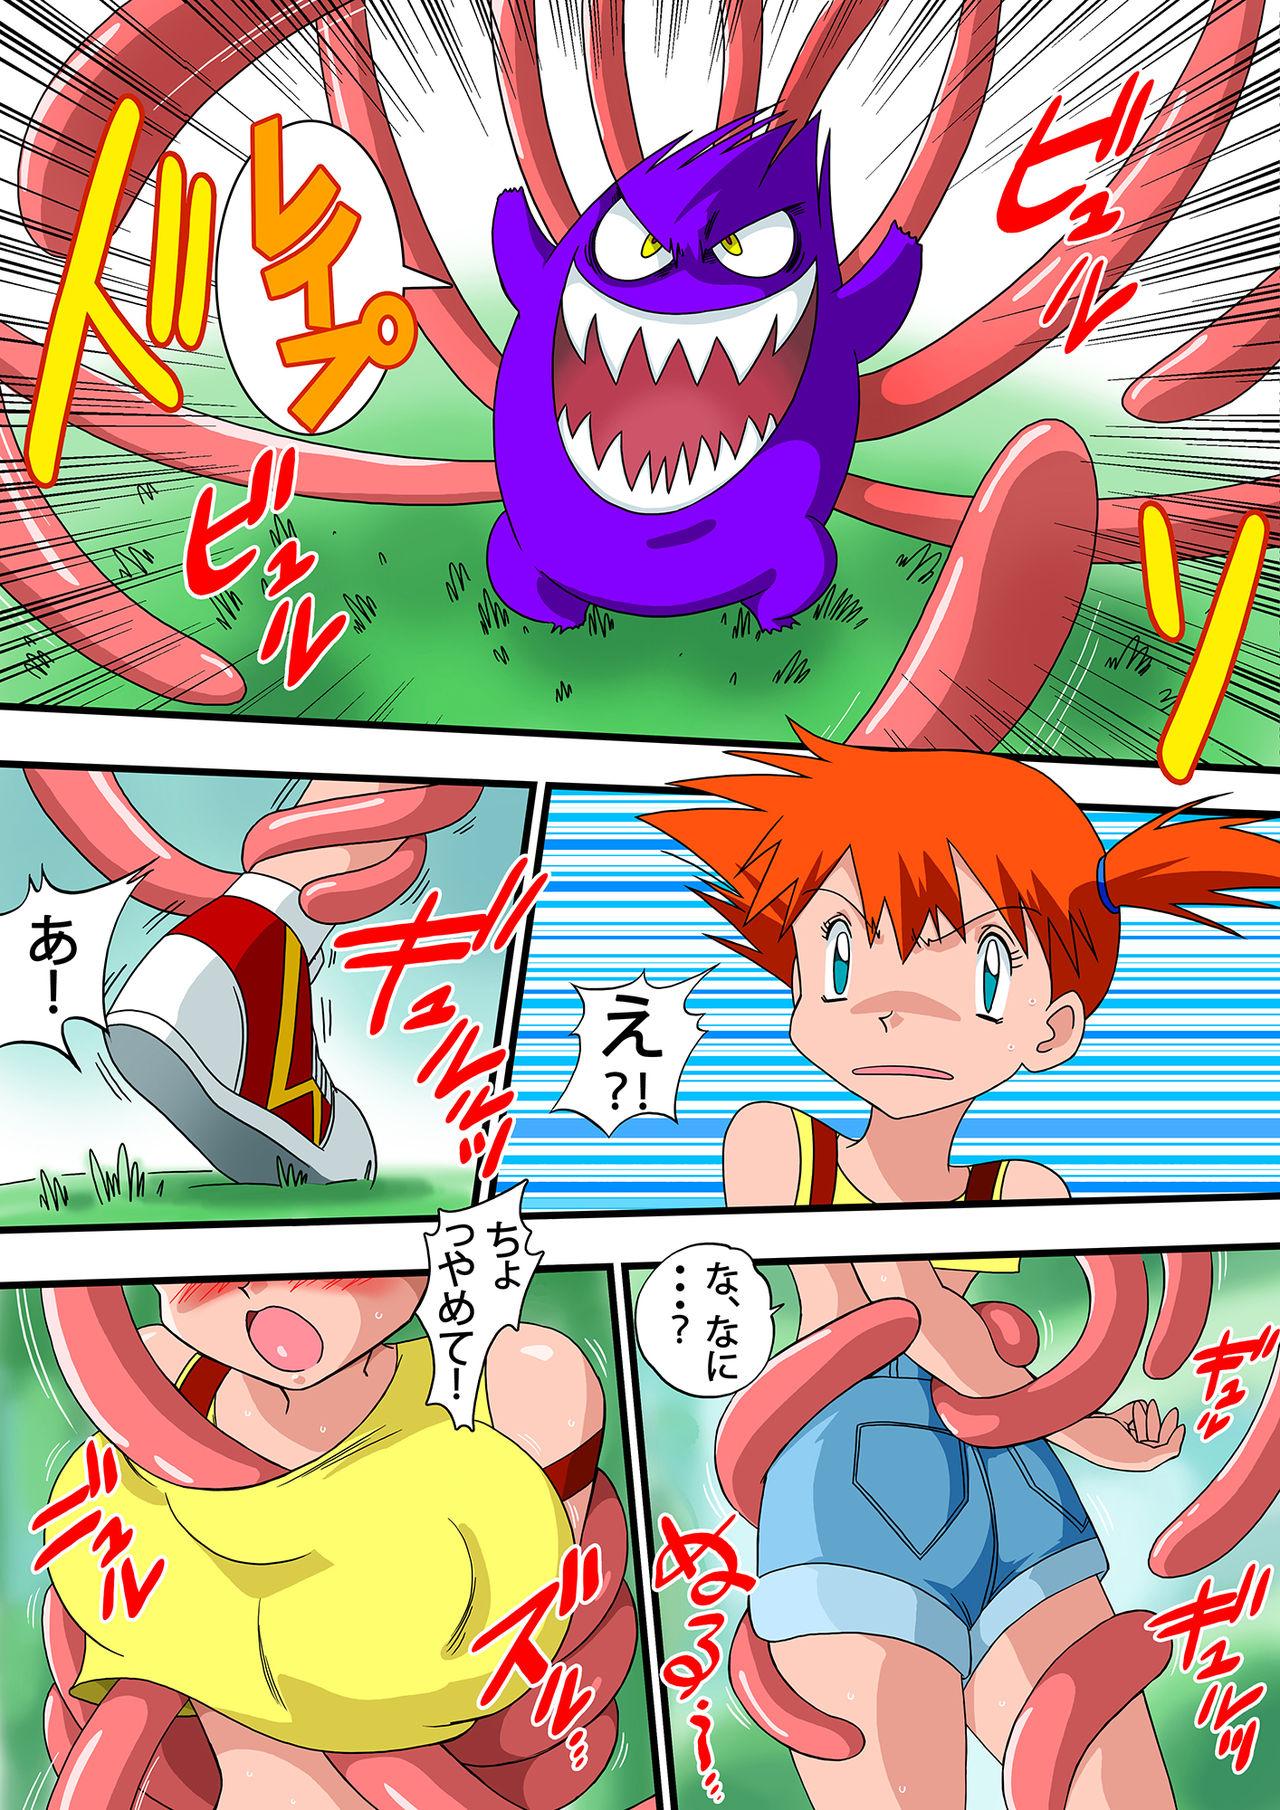 Teacher PokePoke - Pokemon Carro - Page 4